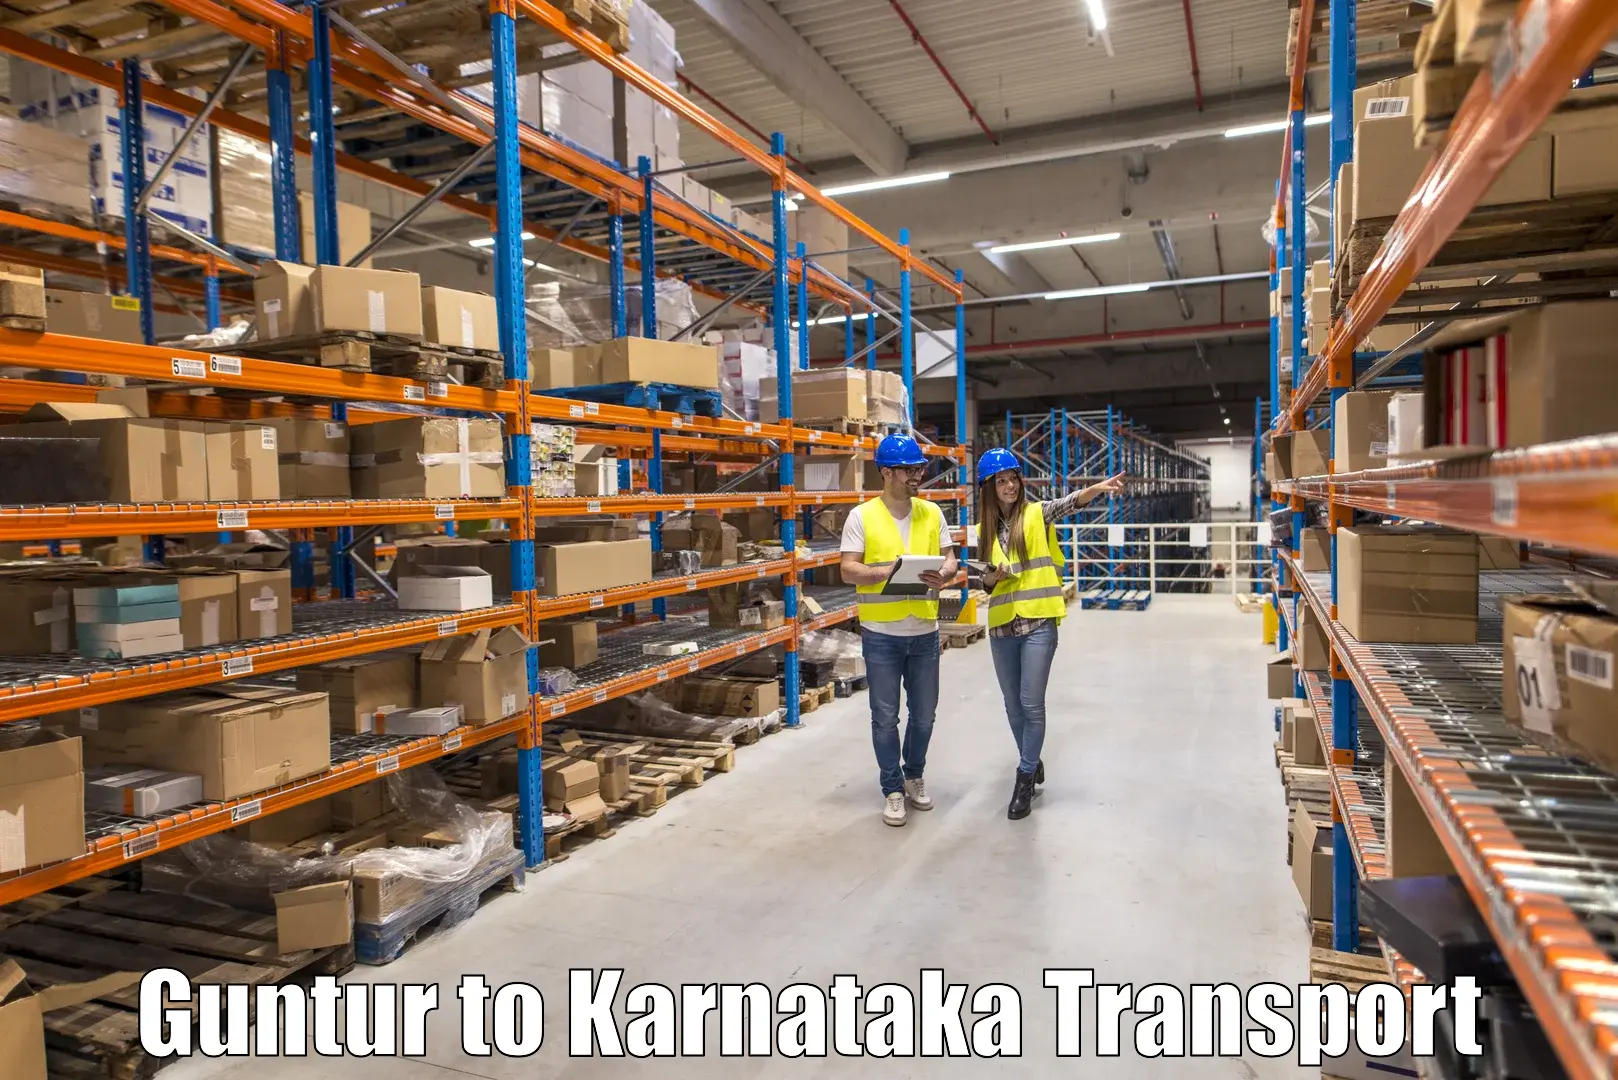 Truck transport companies in India Guntur to Rona Gadag